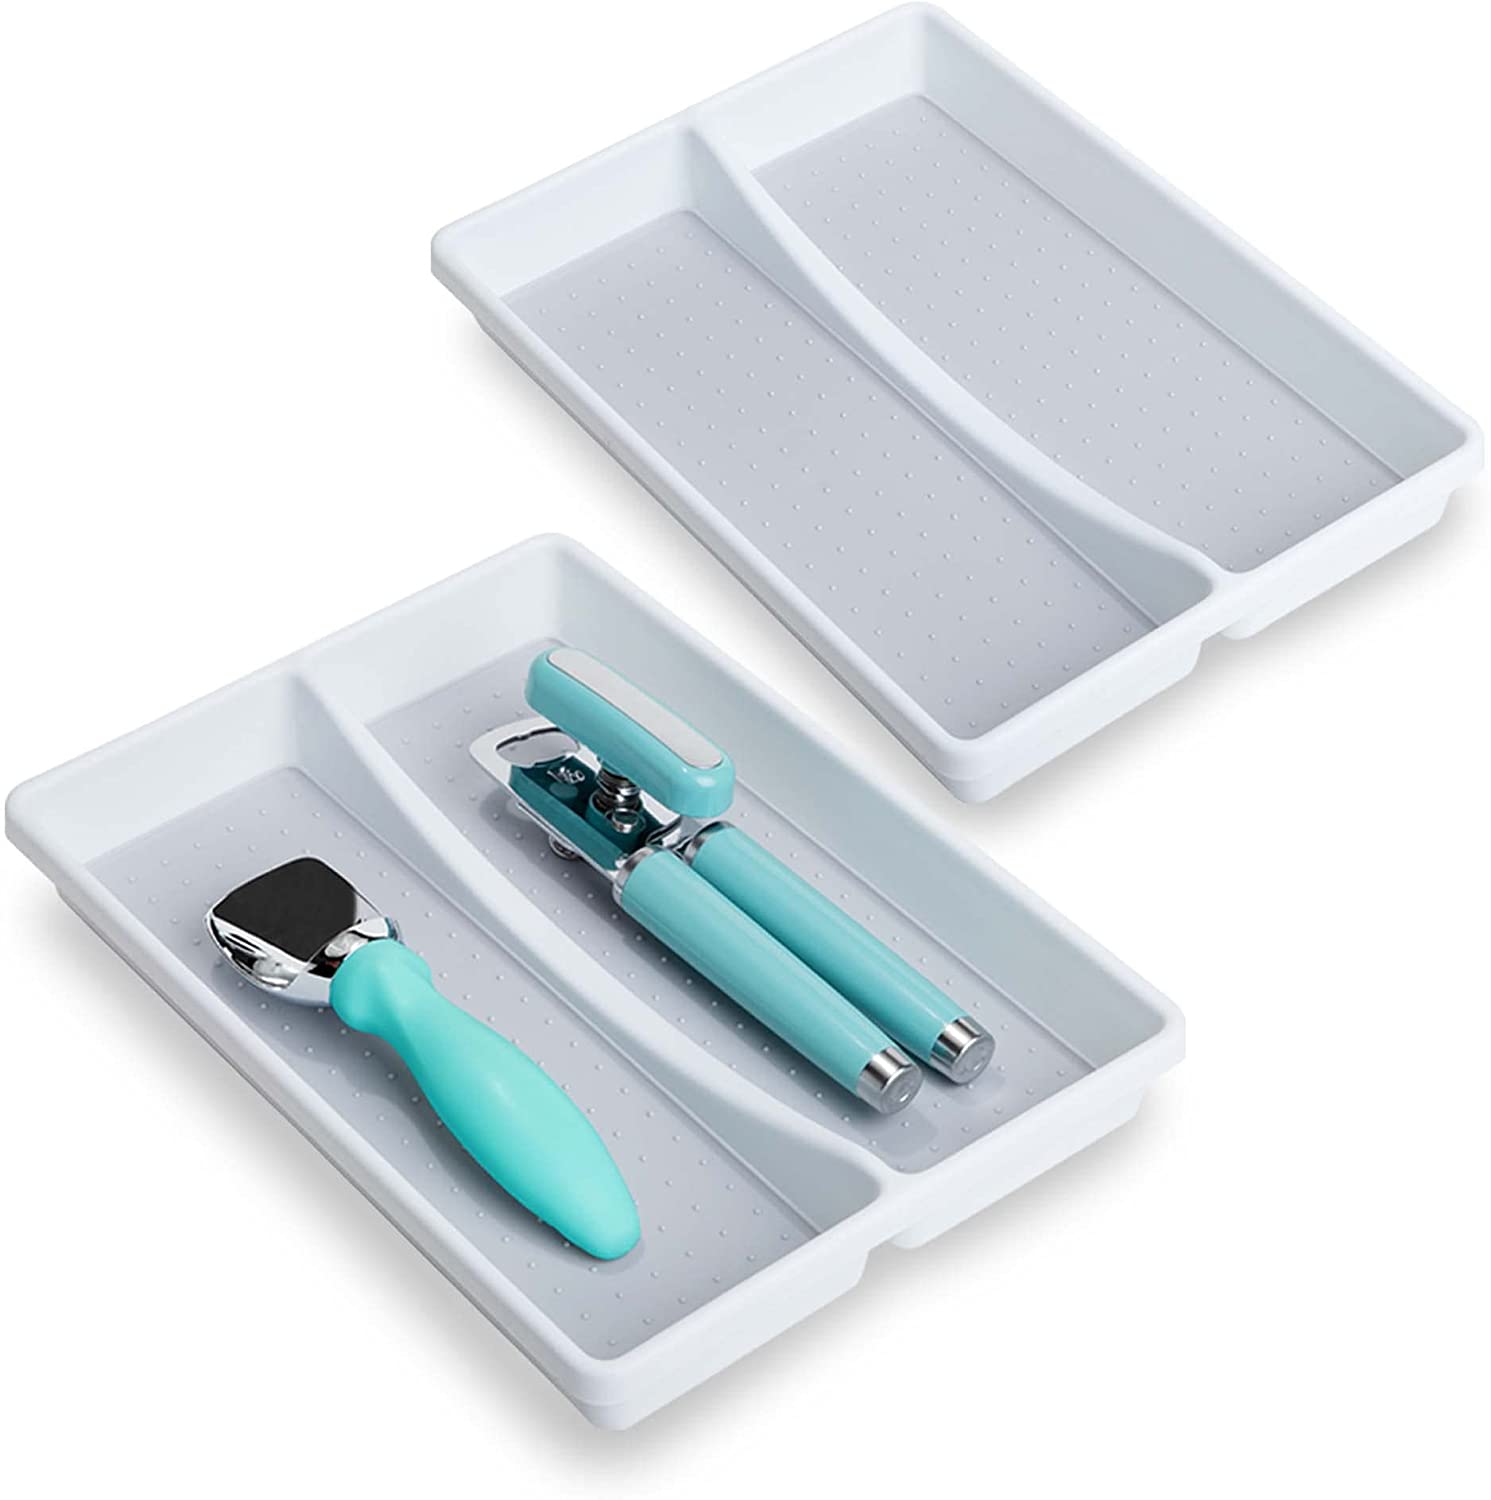 2-Compartment Plastic Drawer Organizer - White - Smart Design® 5